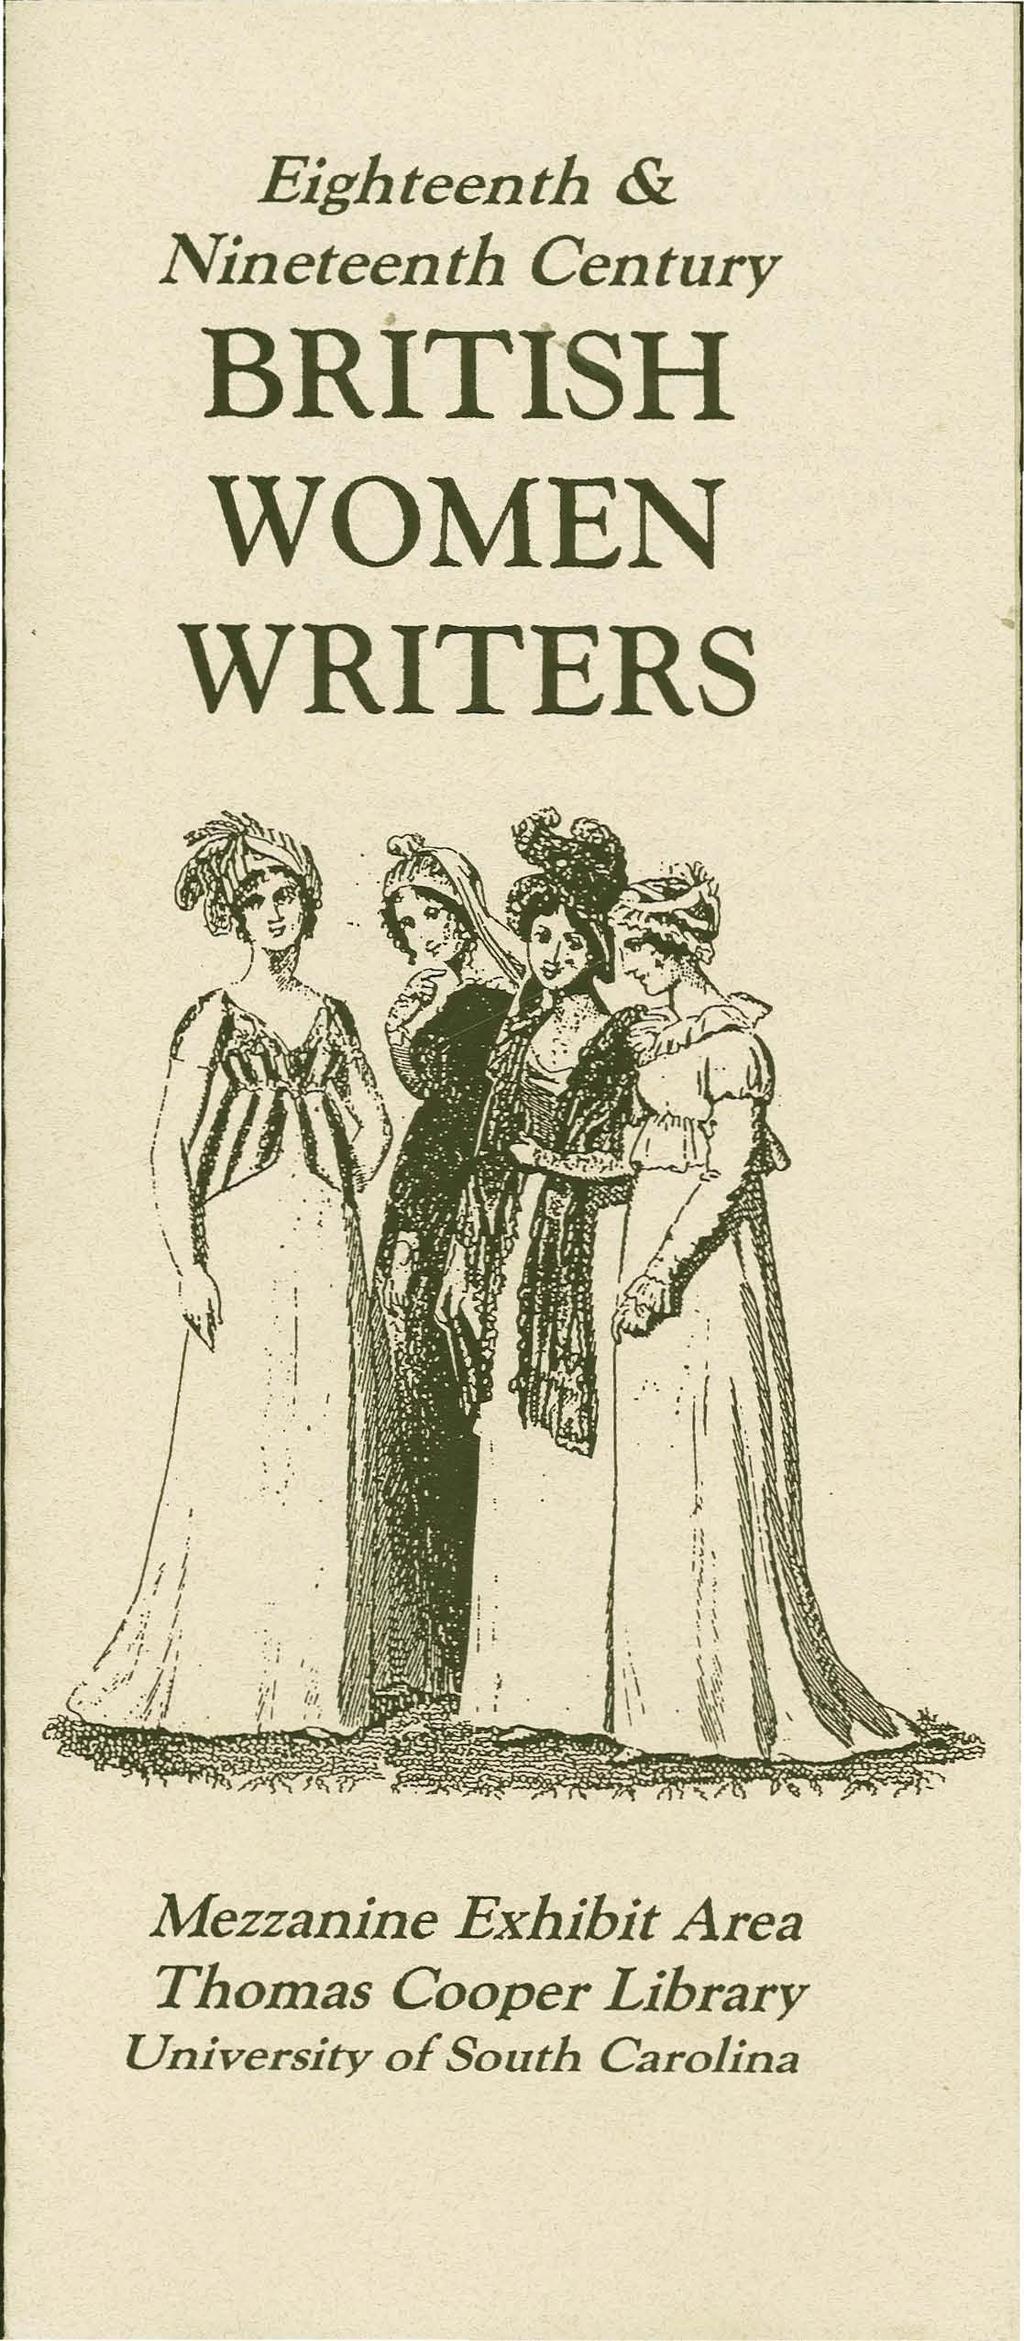 Eighteenth & Nineteenth Century BRiTISH WOMEN WRITERS Mezzanine